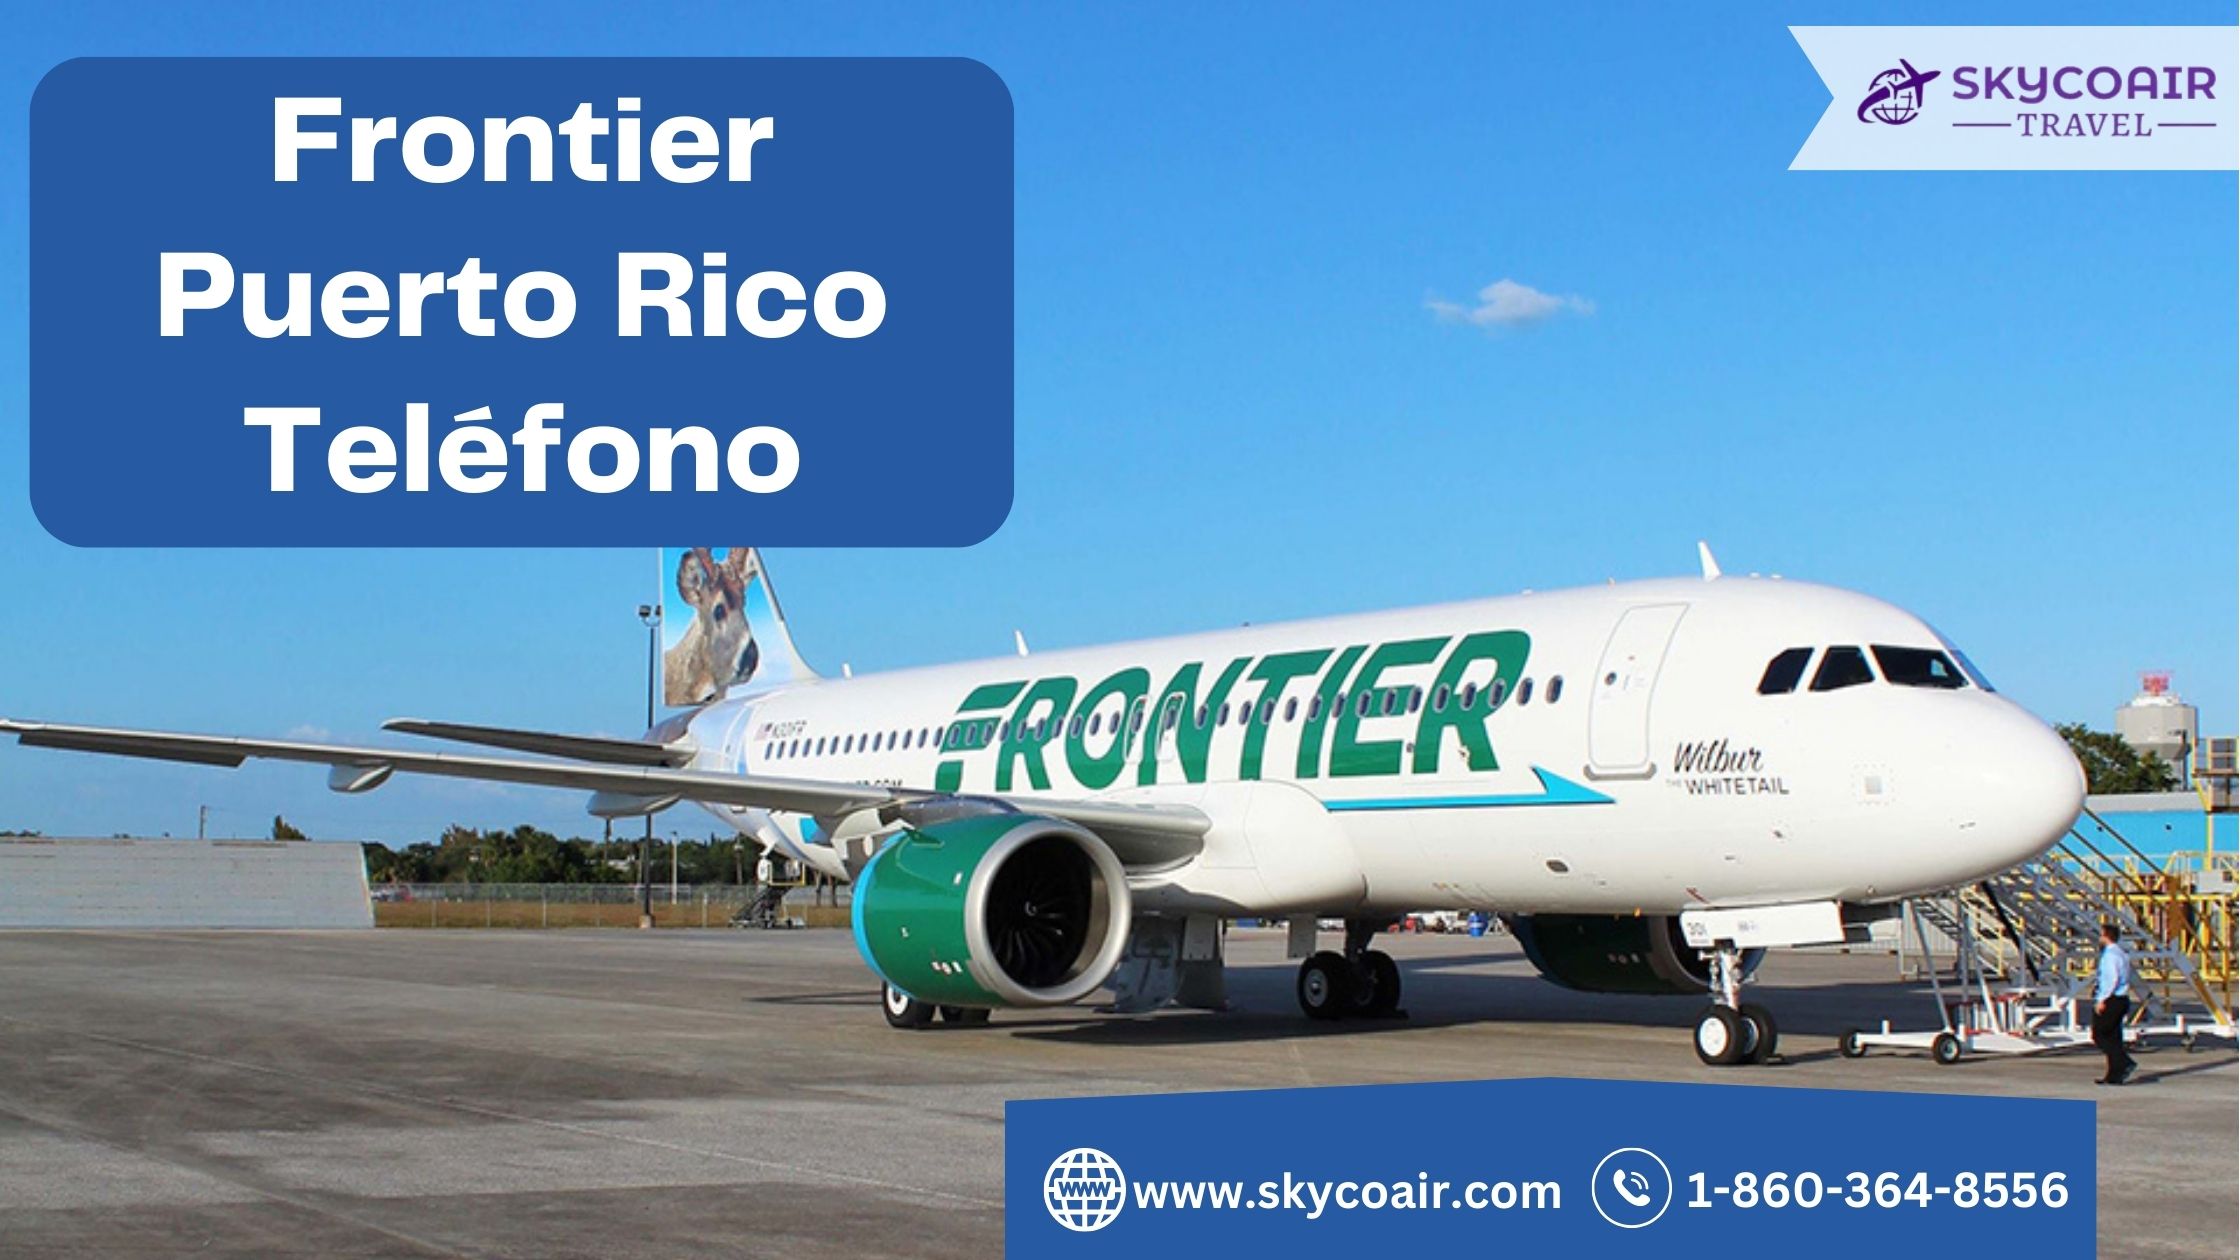 Frontier Puerto Rico Teléfono